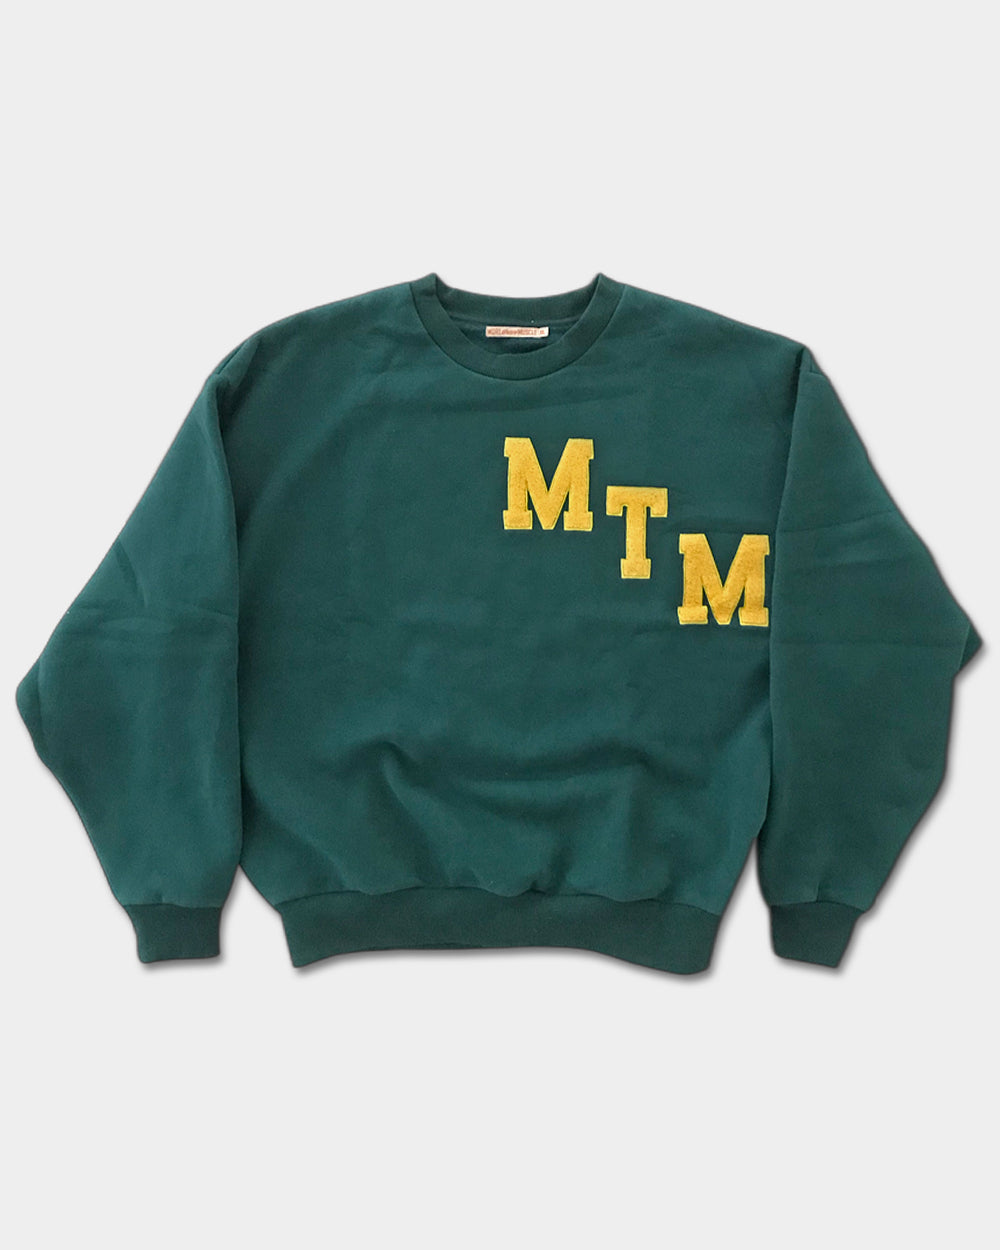 MTM College Sweatshirt